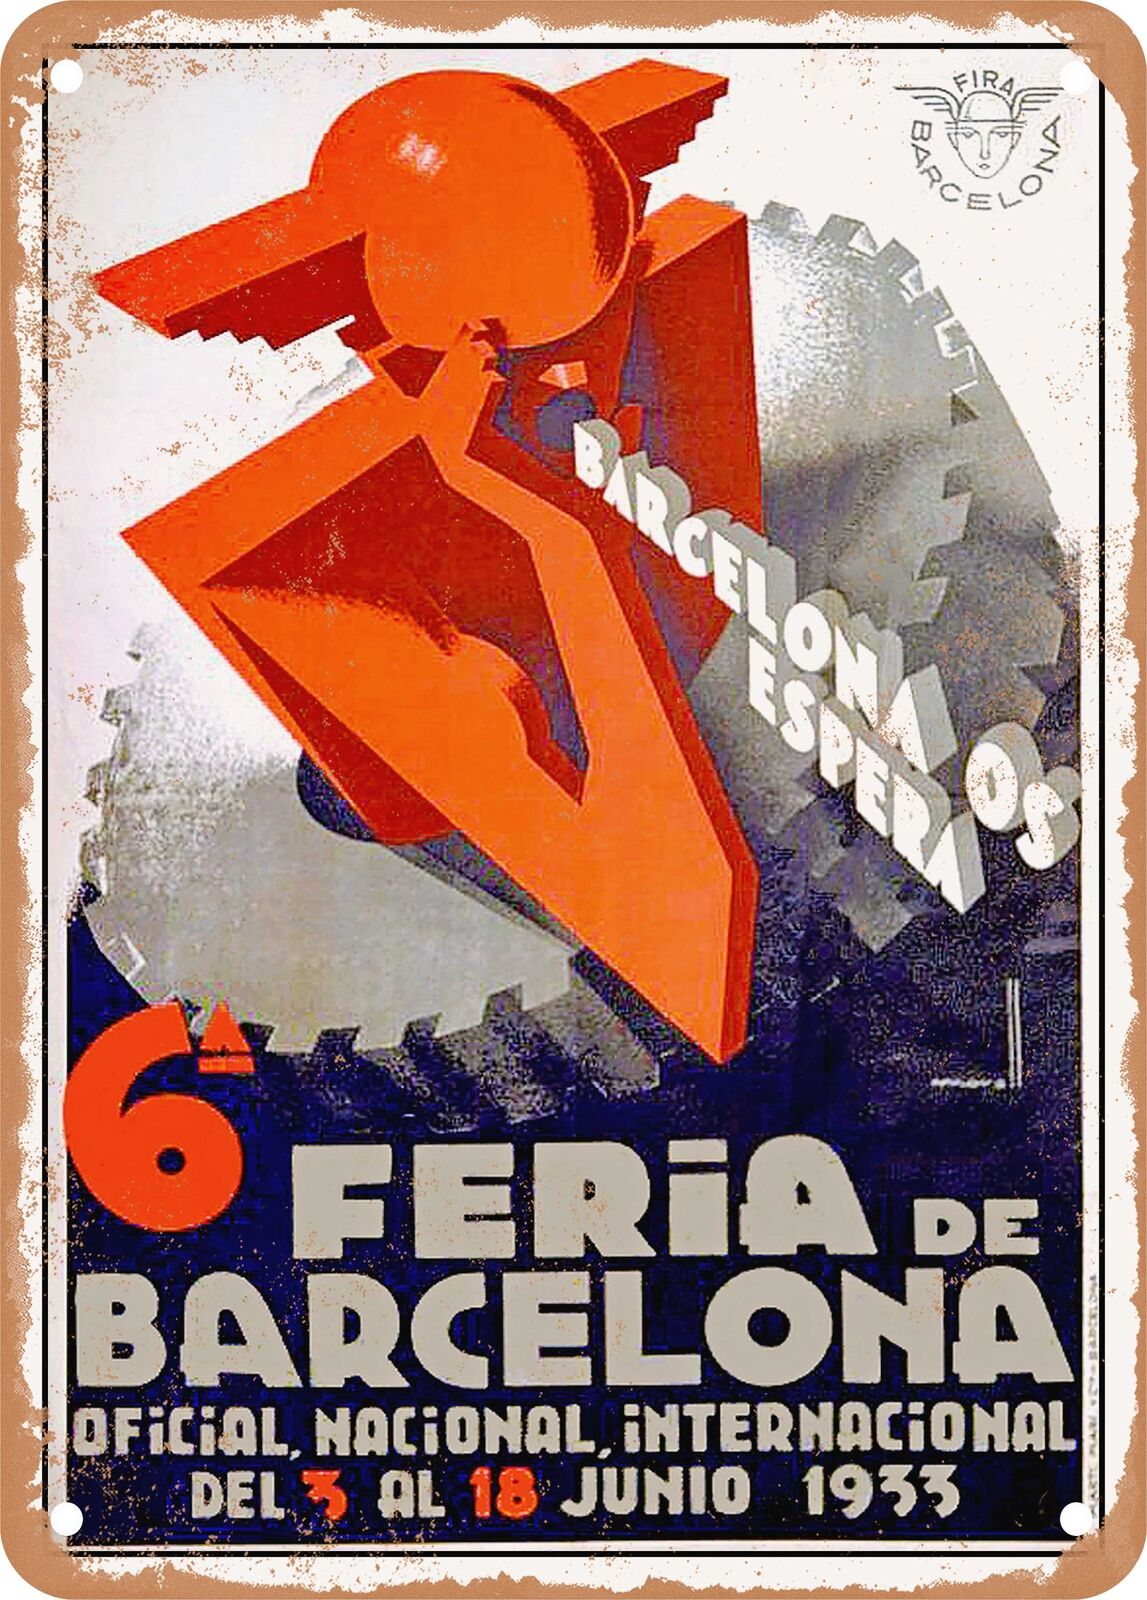 METAL SIGN - 1933 Barcelona awaits you, 6th Barcelona Fair Vintage Ad